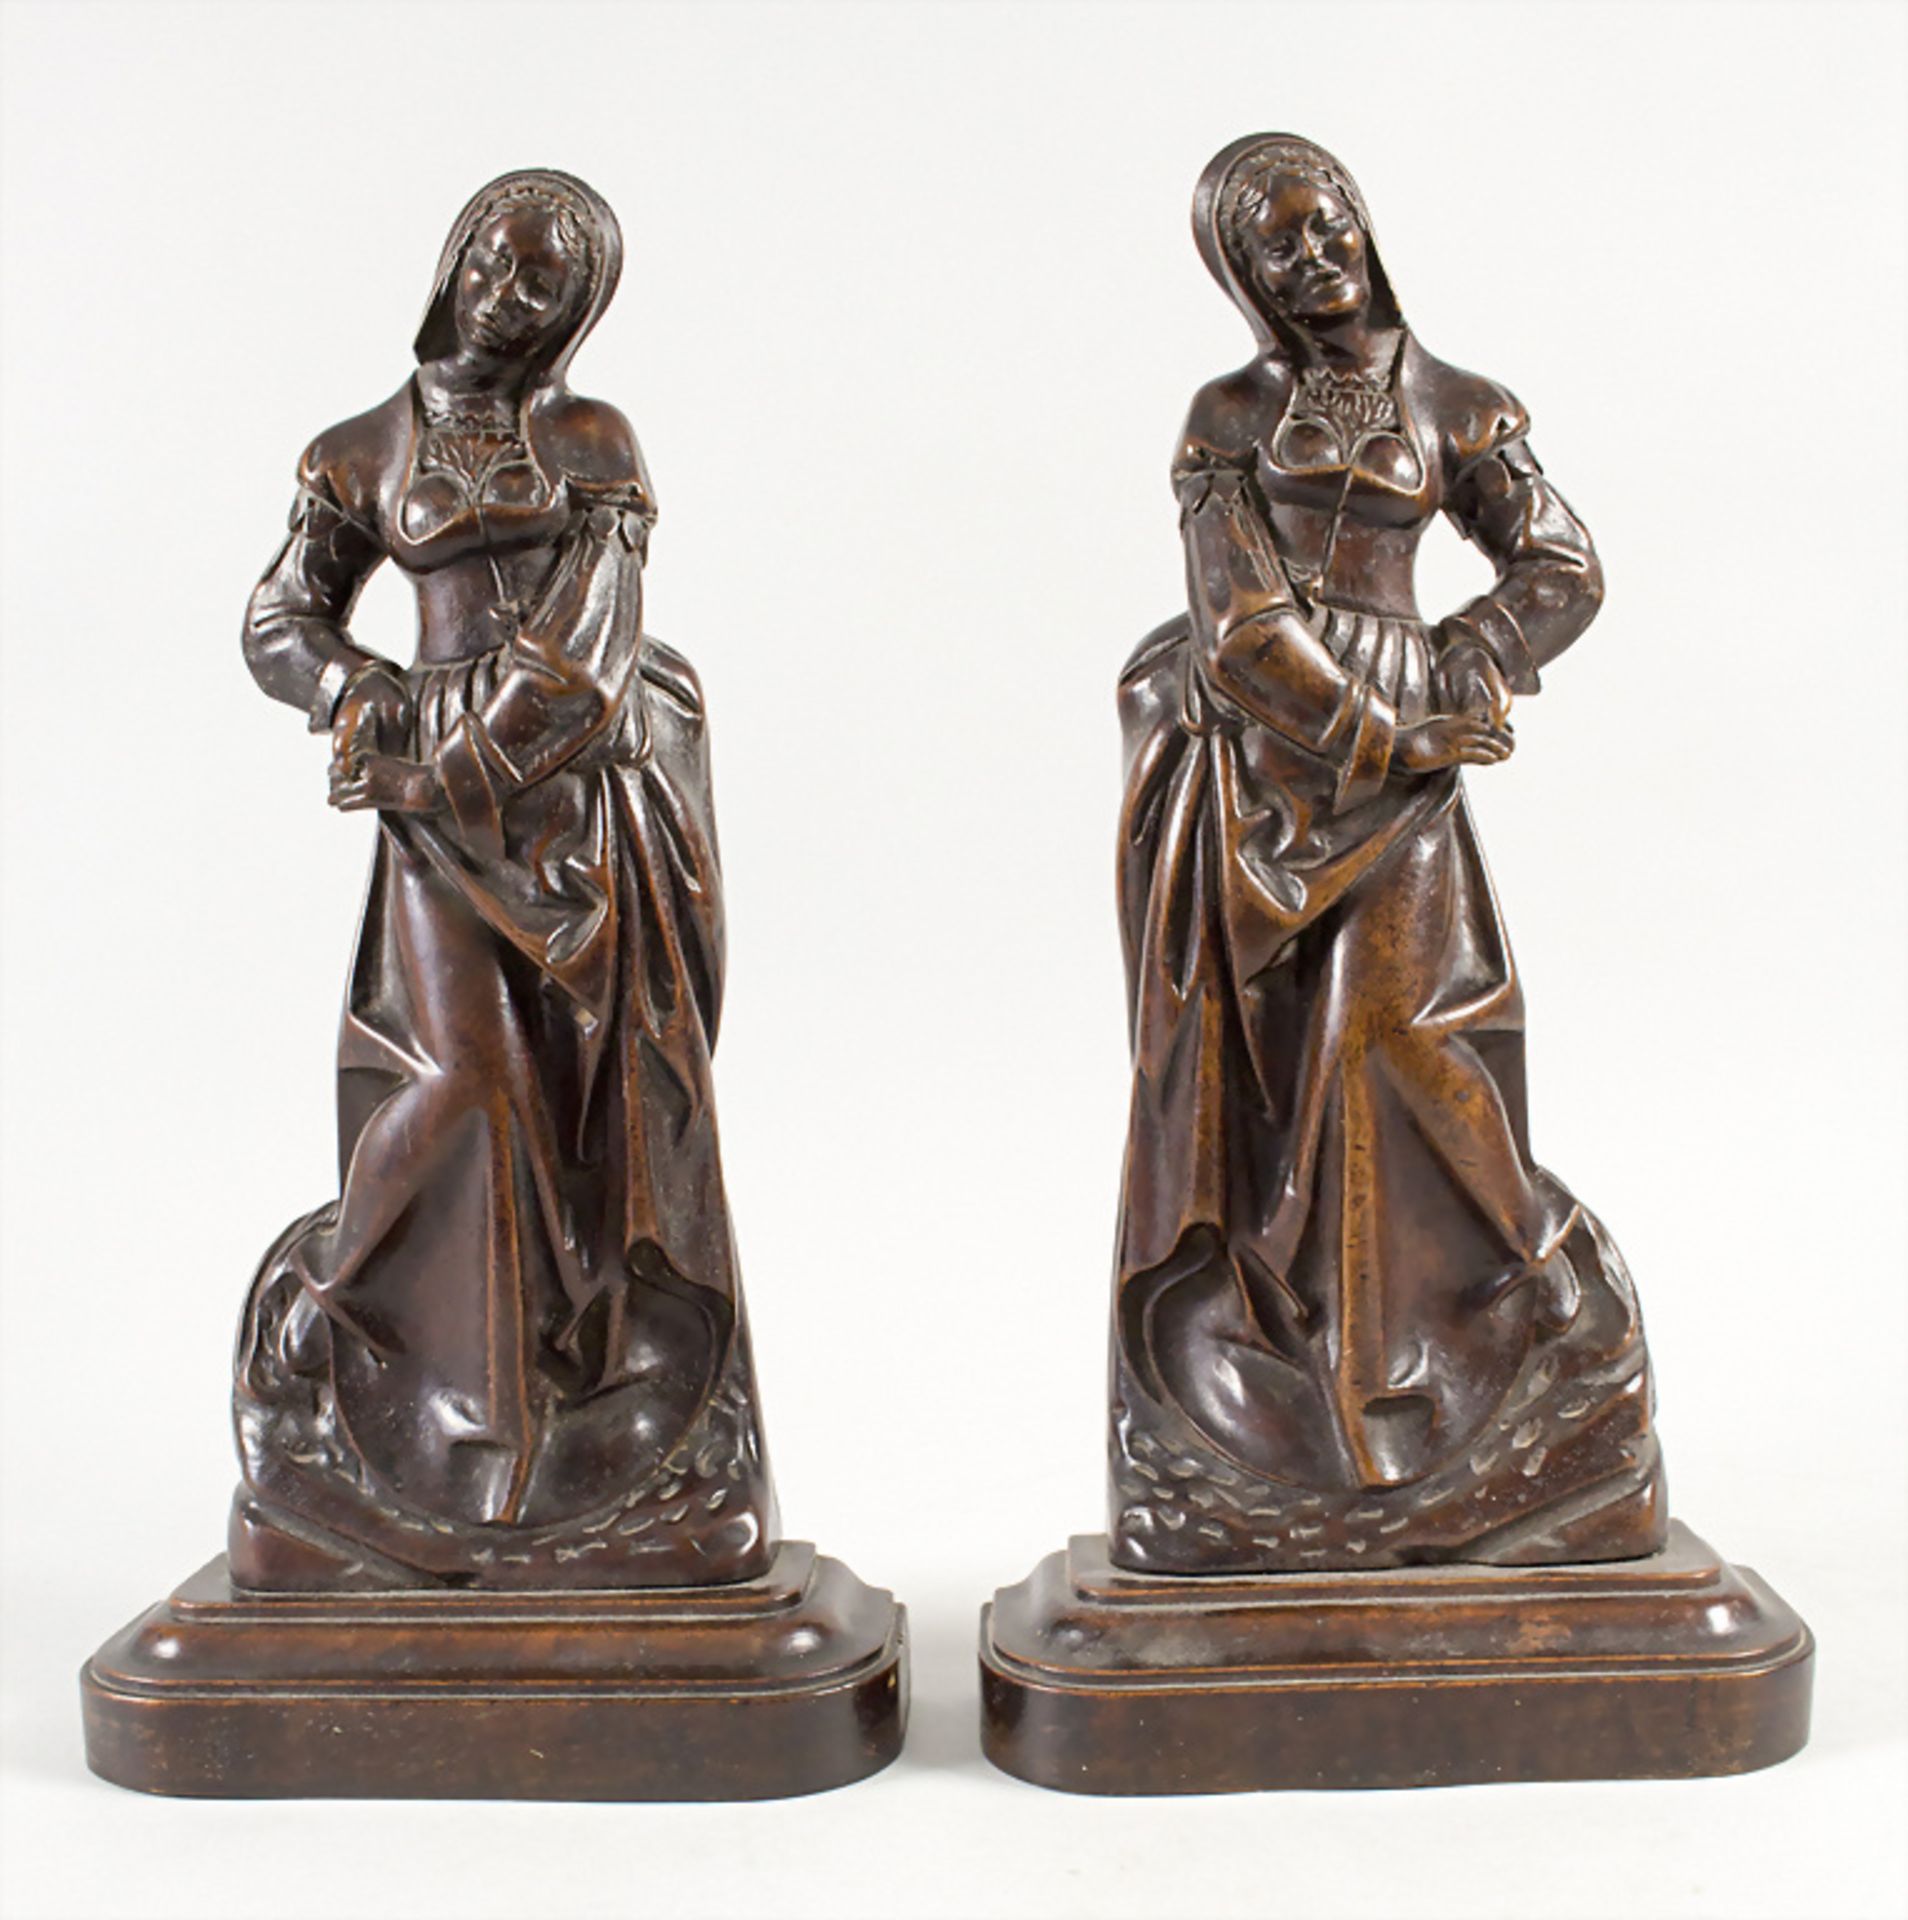 Paar Renaissance Skulpturen / A pair of Renaissance wooden sculptures, wohl 16. Jh. - Image 3 of 6